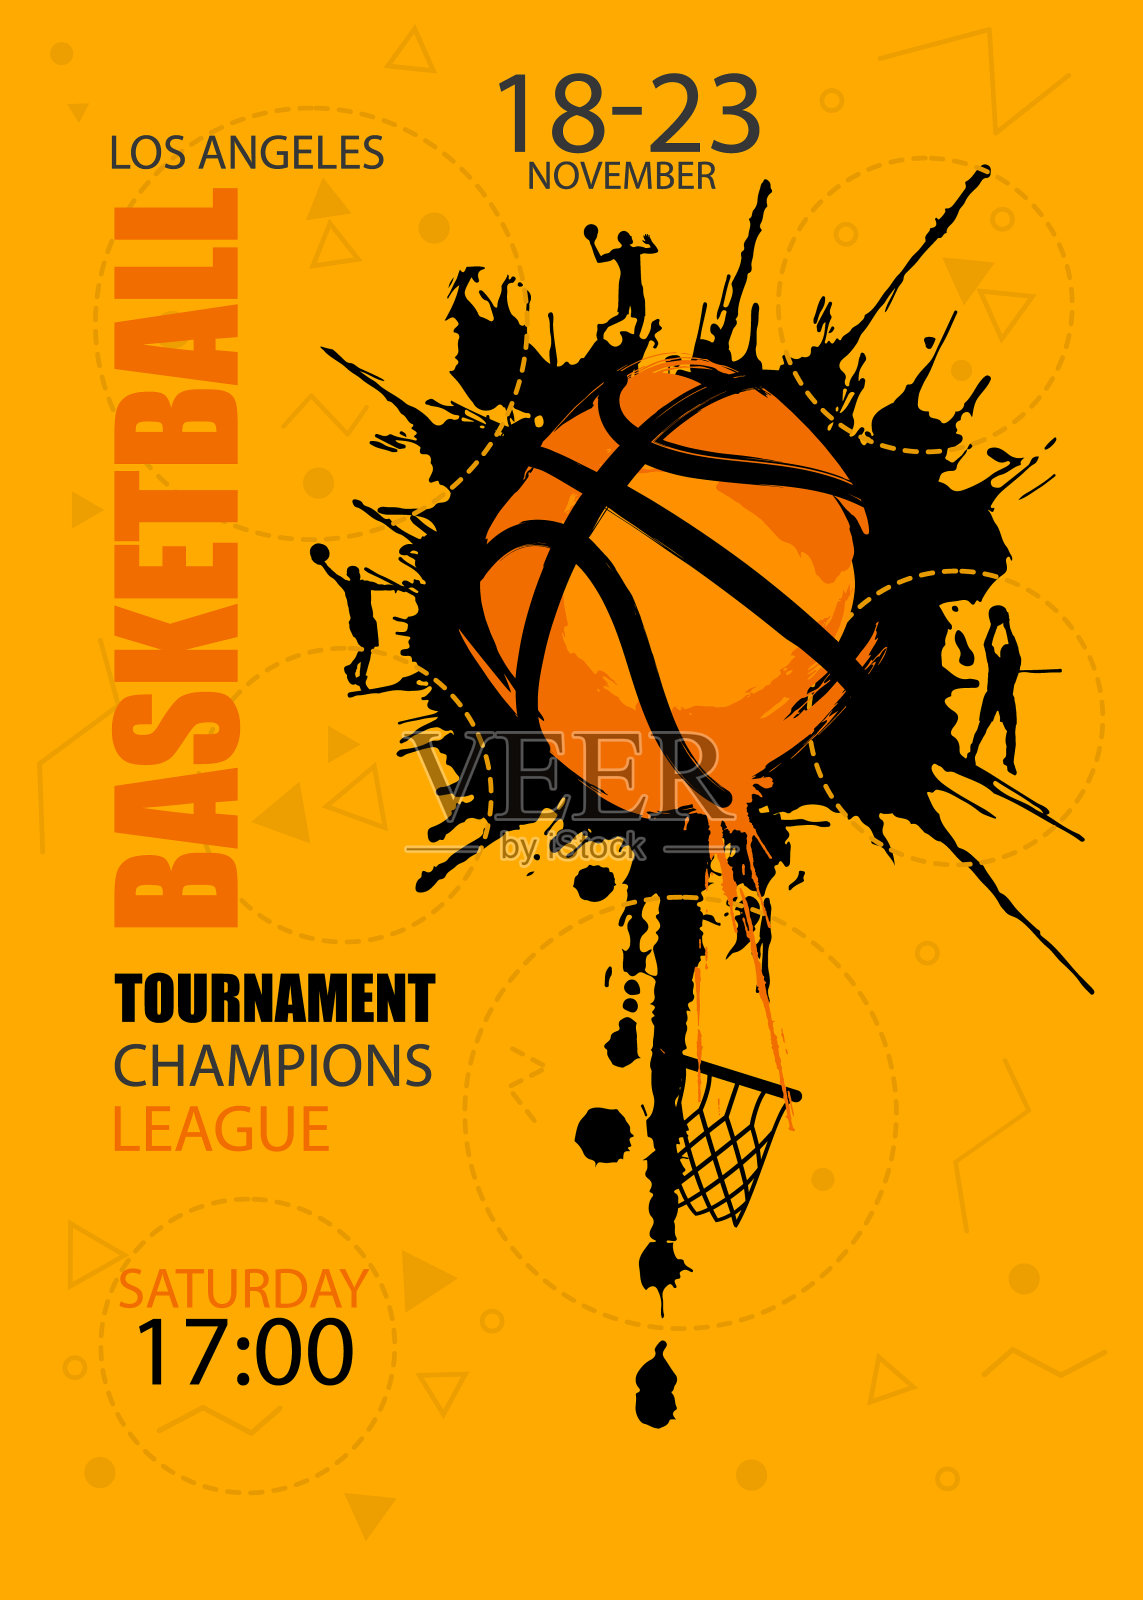 设计的篮球。比赛的海报。抽象的背景。街头篮球。手绘纹理，垃圾风格。设计模板素材